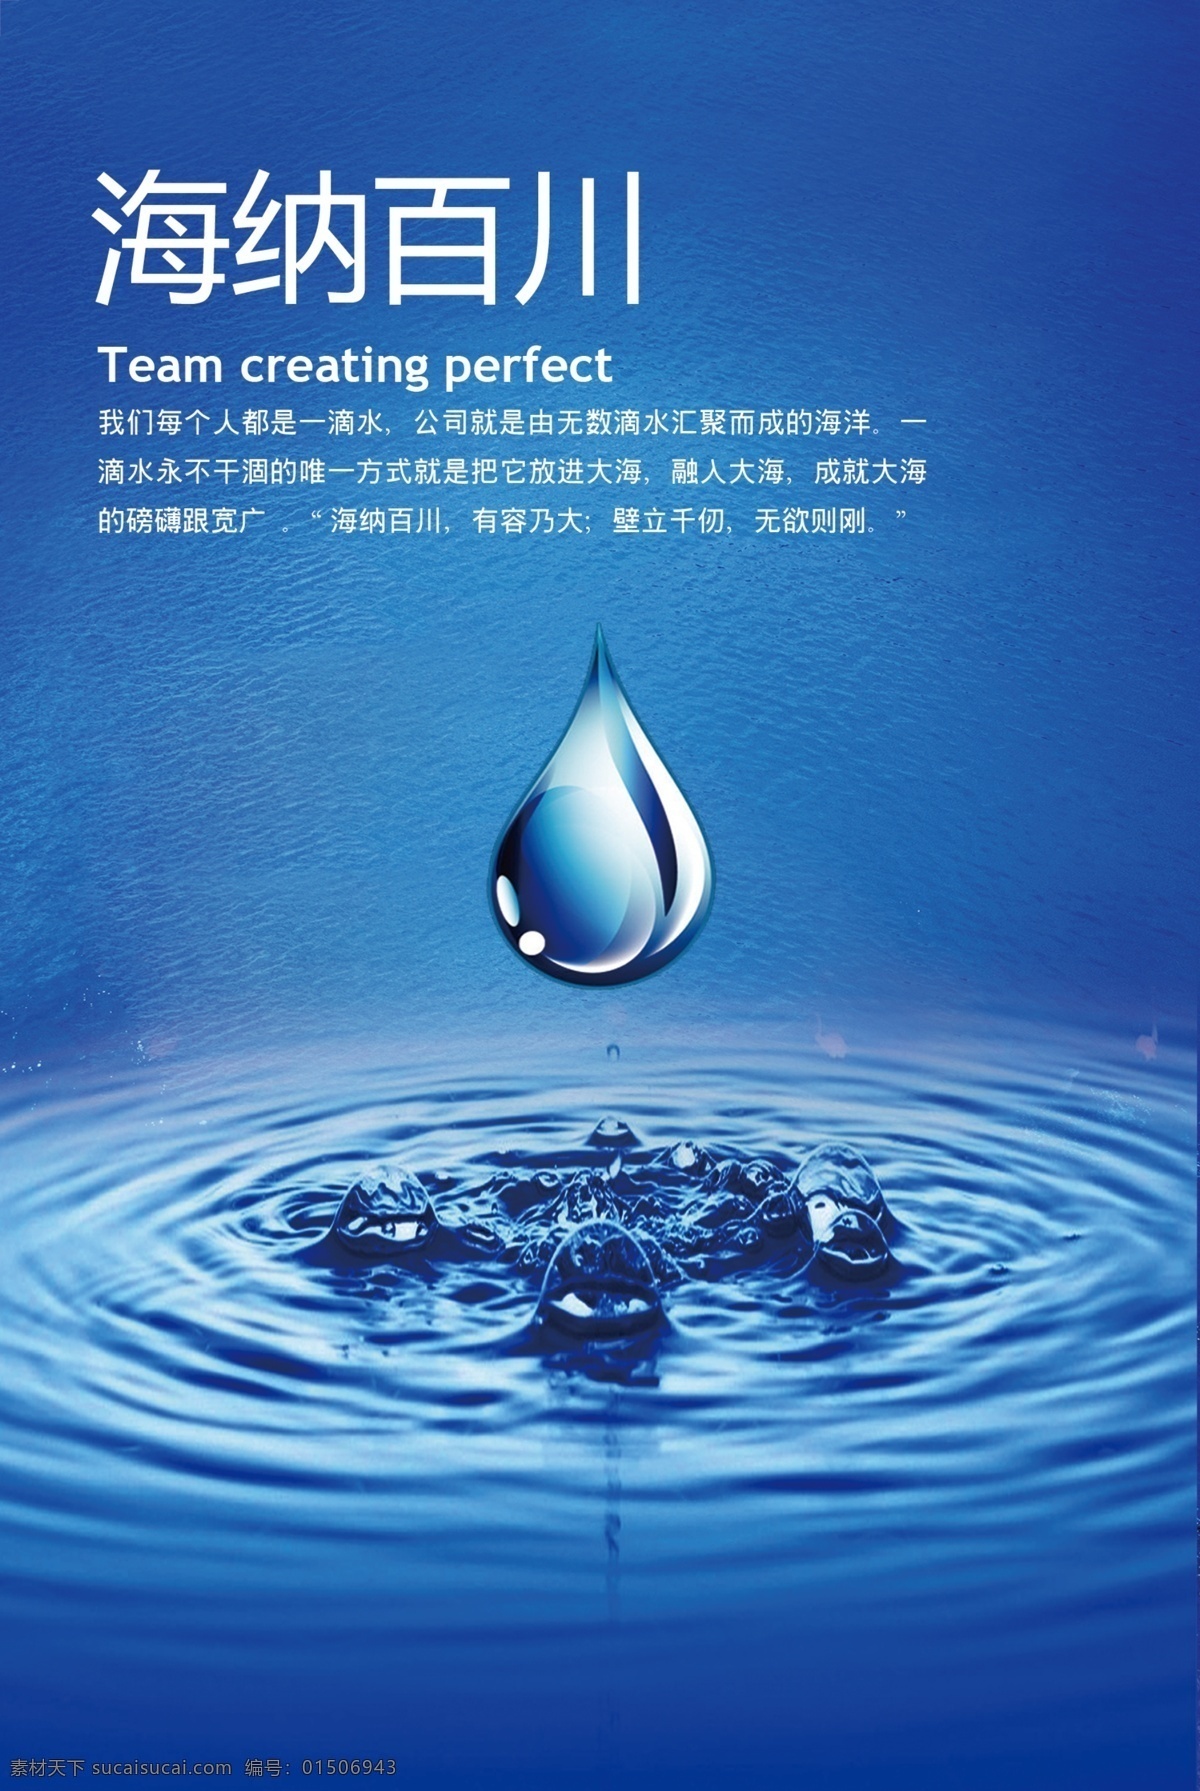 企业形象 海纳百川 水圈 水滴 水 广告设计模板 源文件